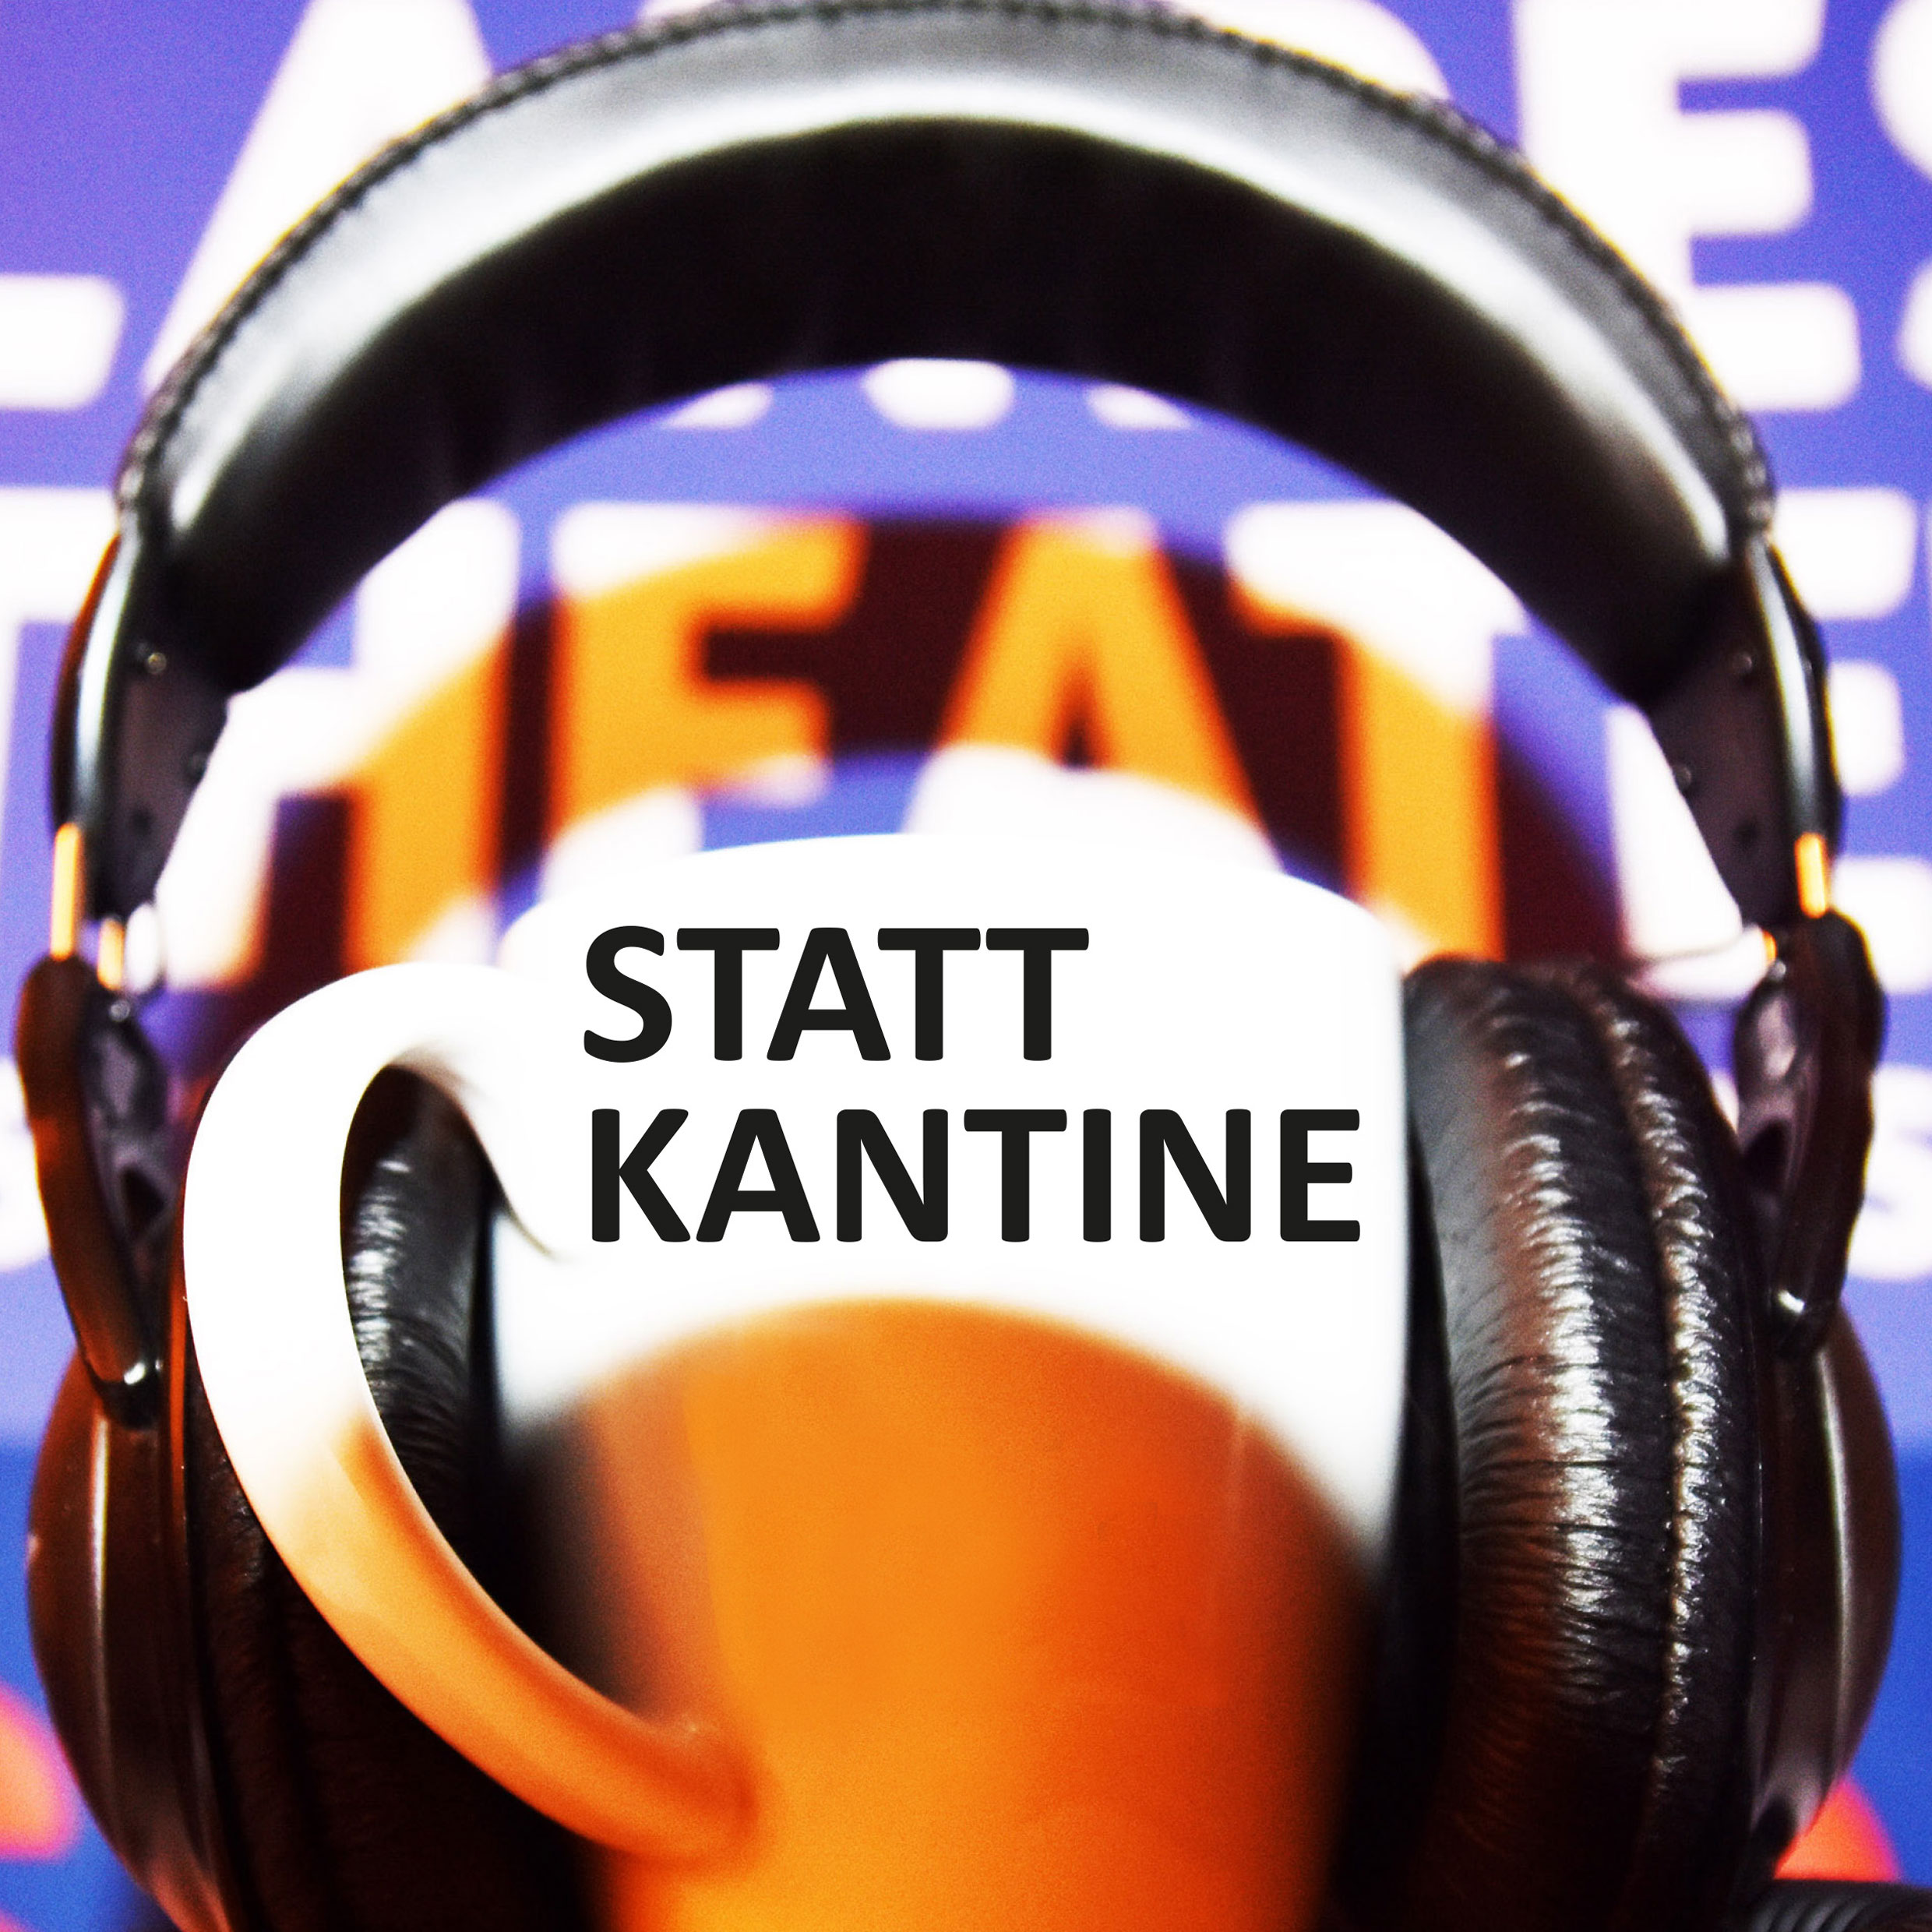 Titelbild des Podcasts Statt Kantine, es zeigt eine weiße Tasse mit aufgesetzten Kopfhörern vor dem Logo des Landestheaters